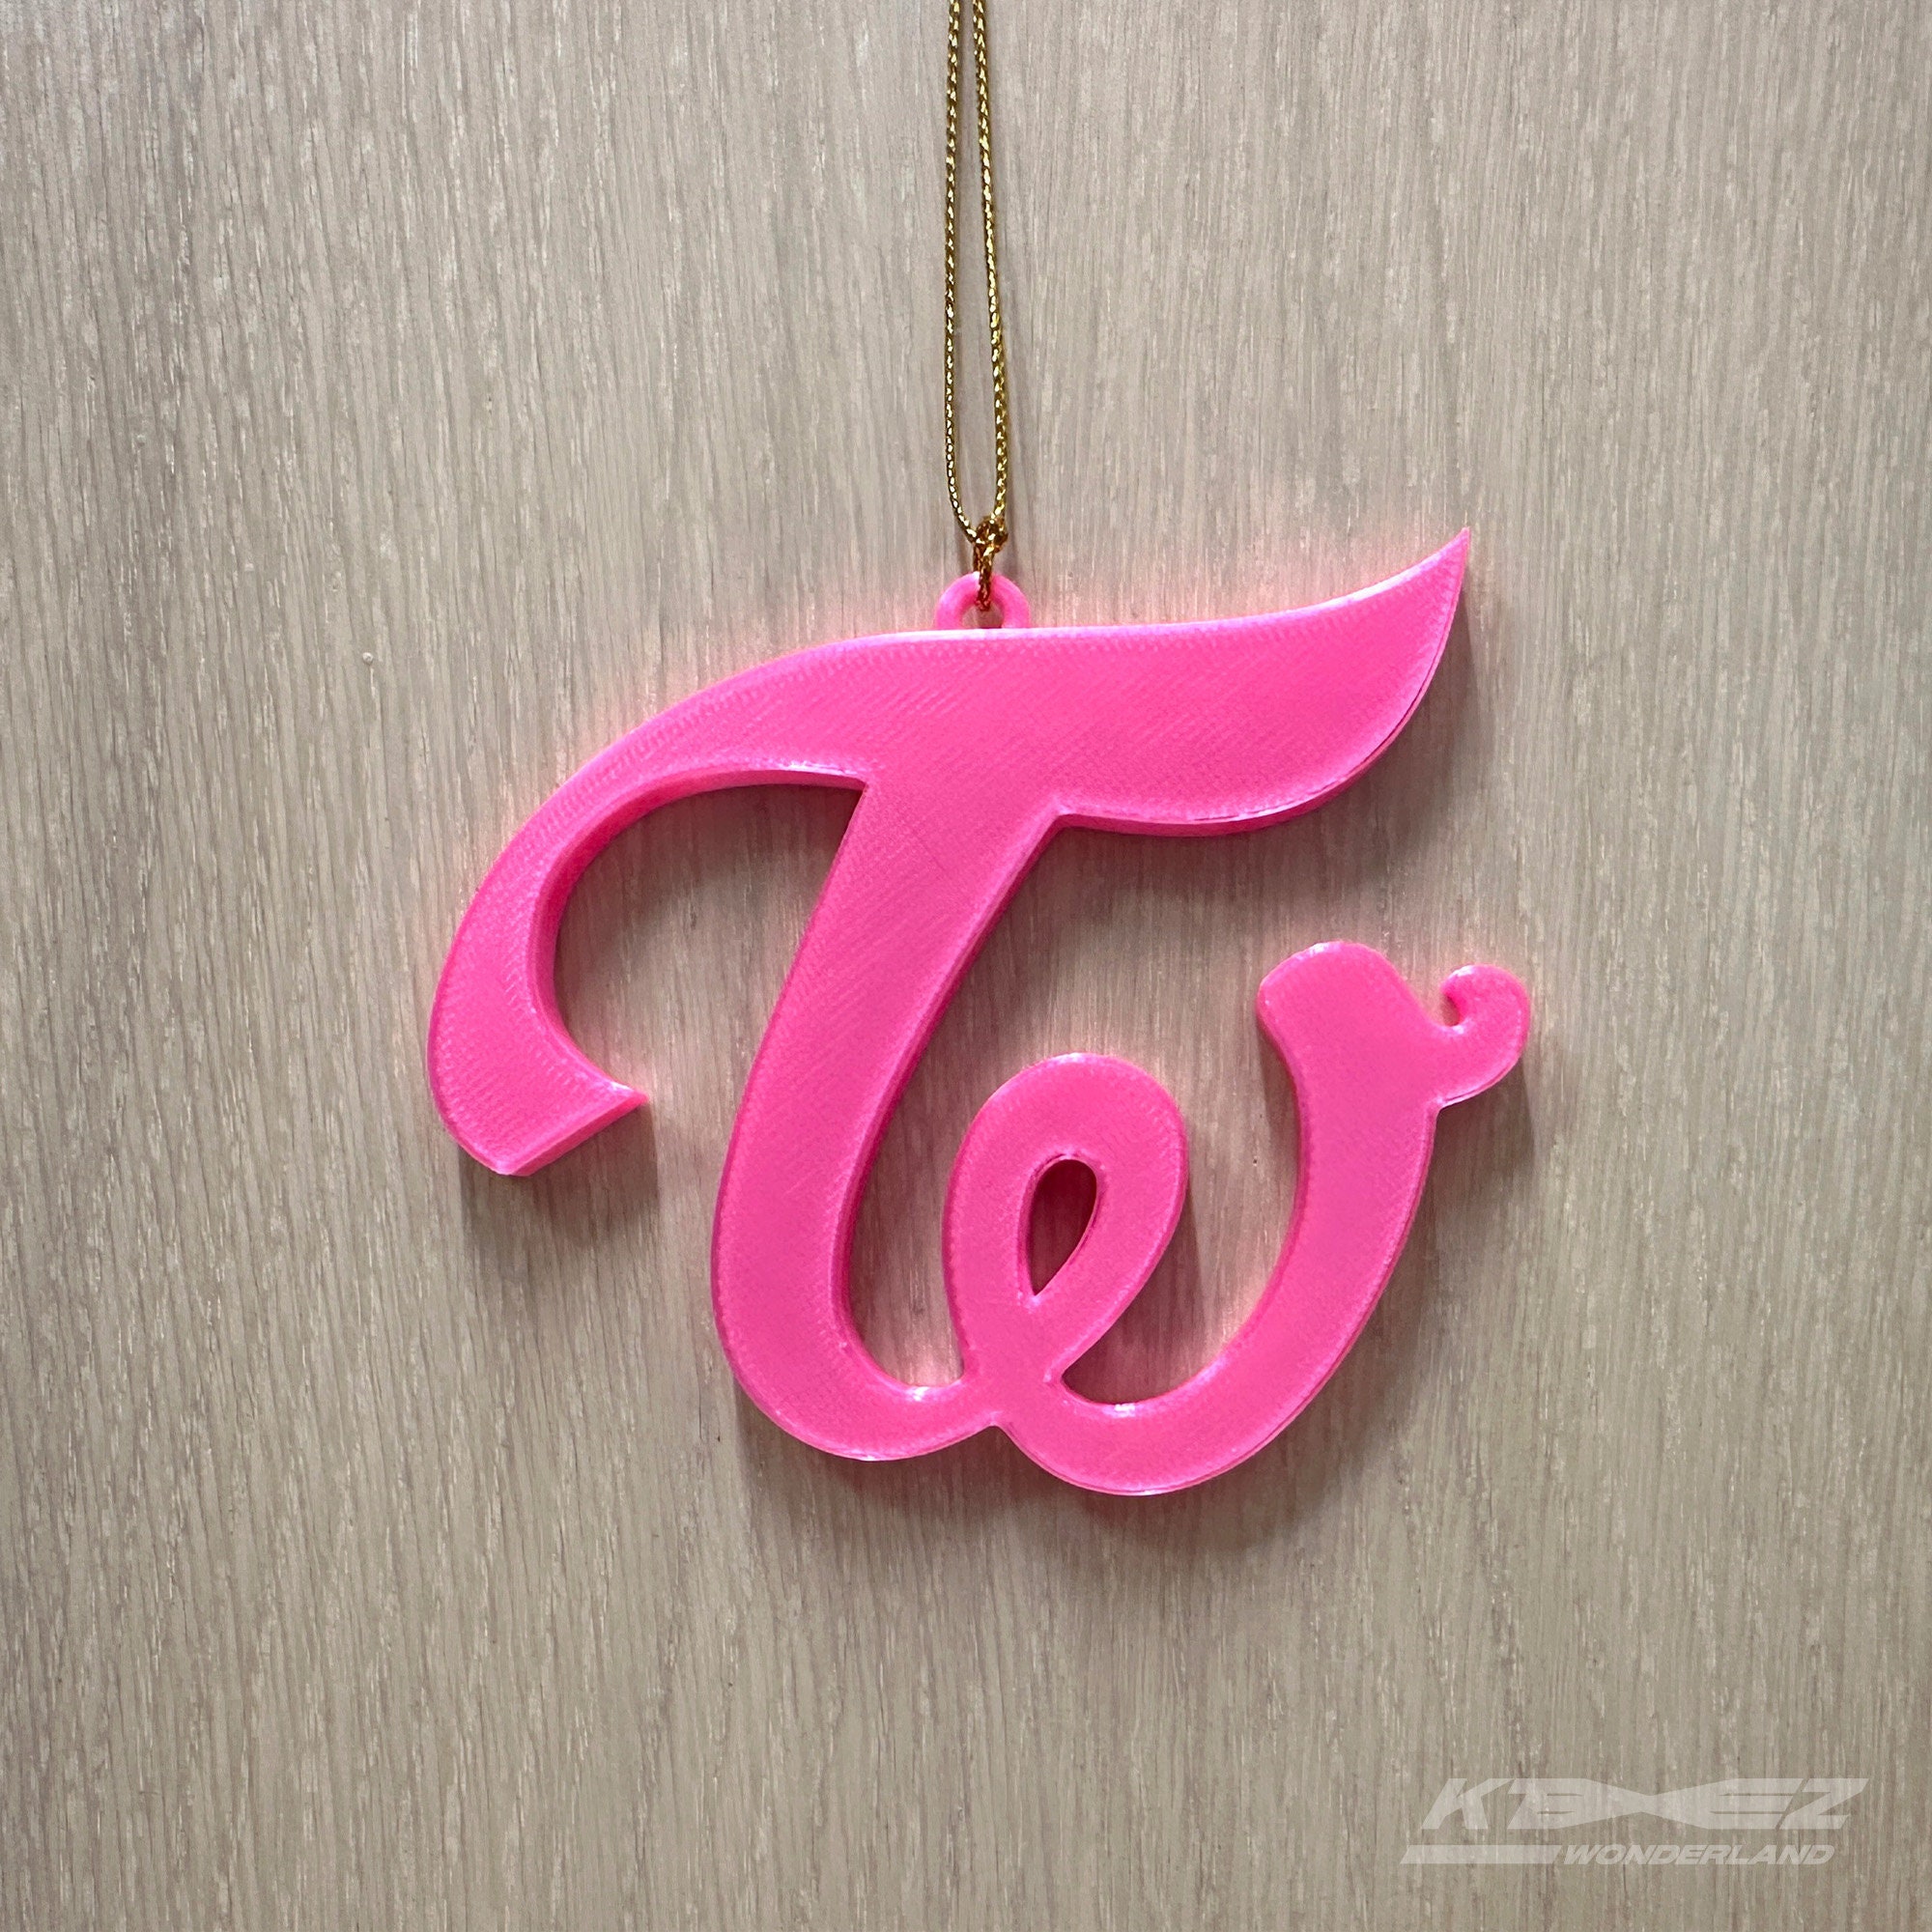 Twice_delights on X: Twaii's Shop logo #Twice #logo   / X